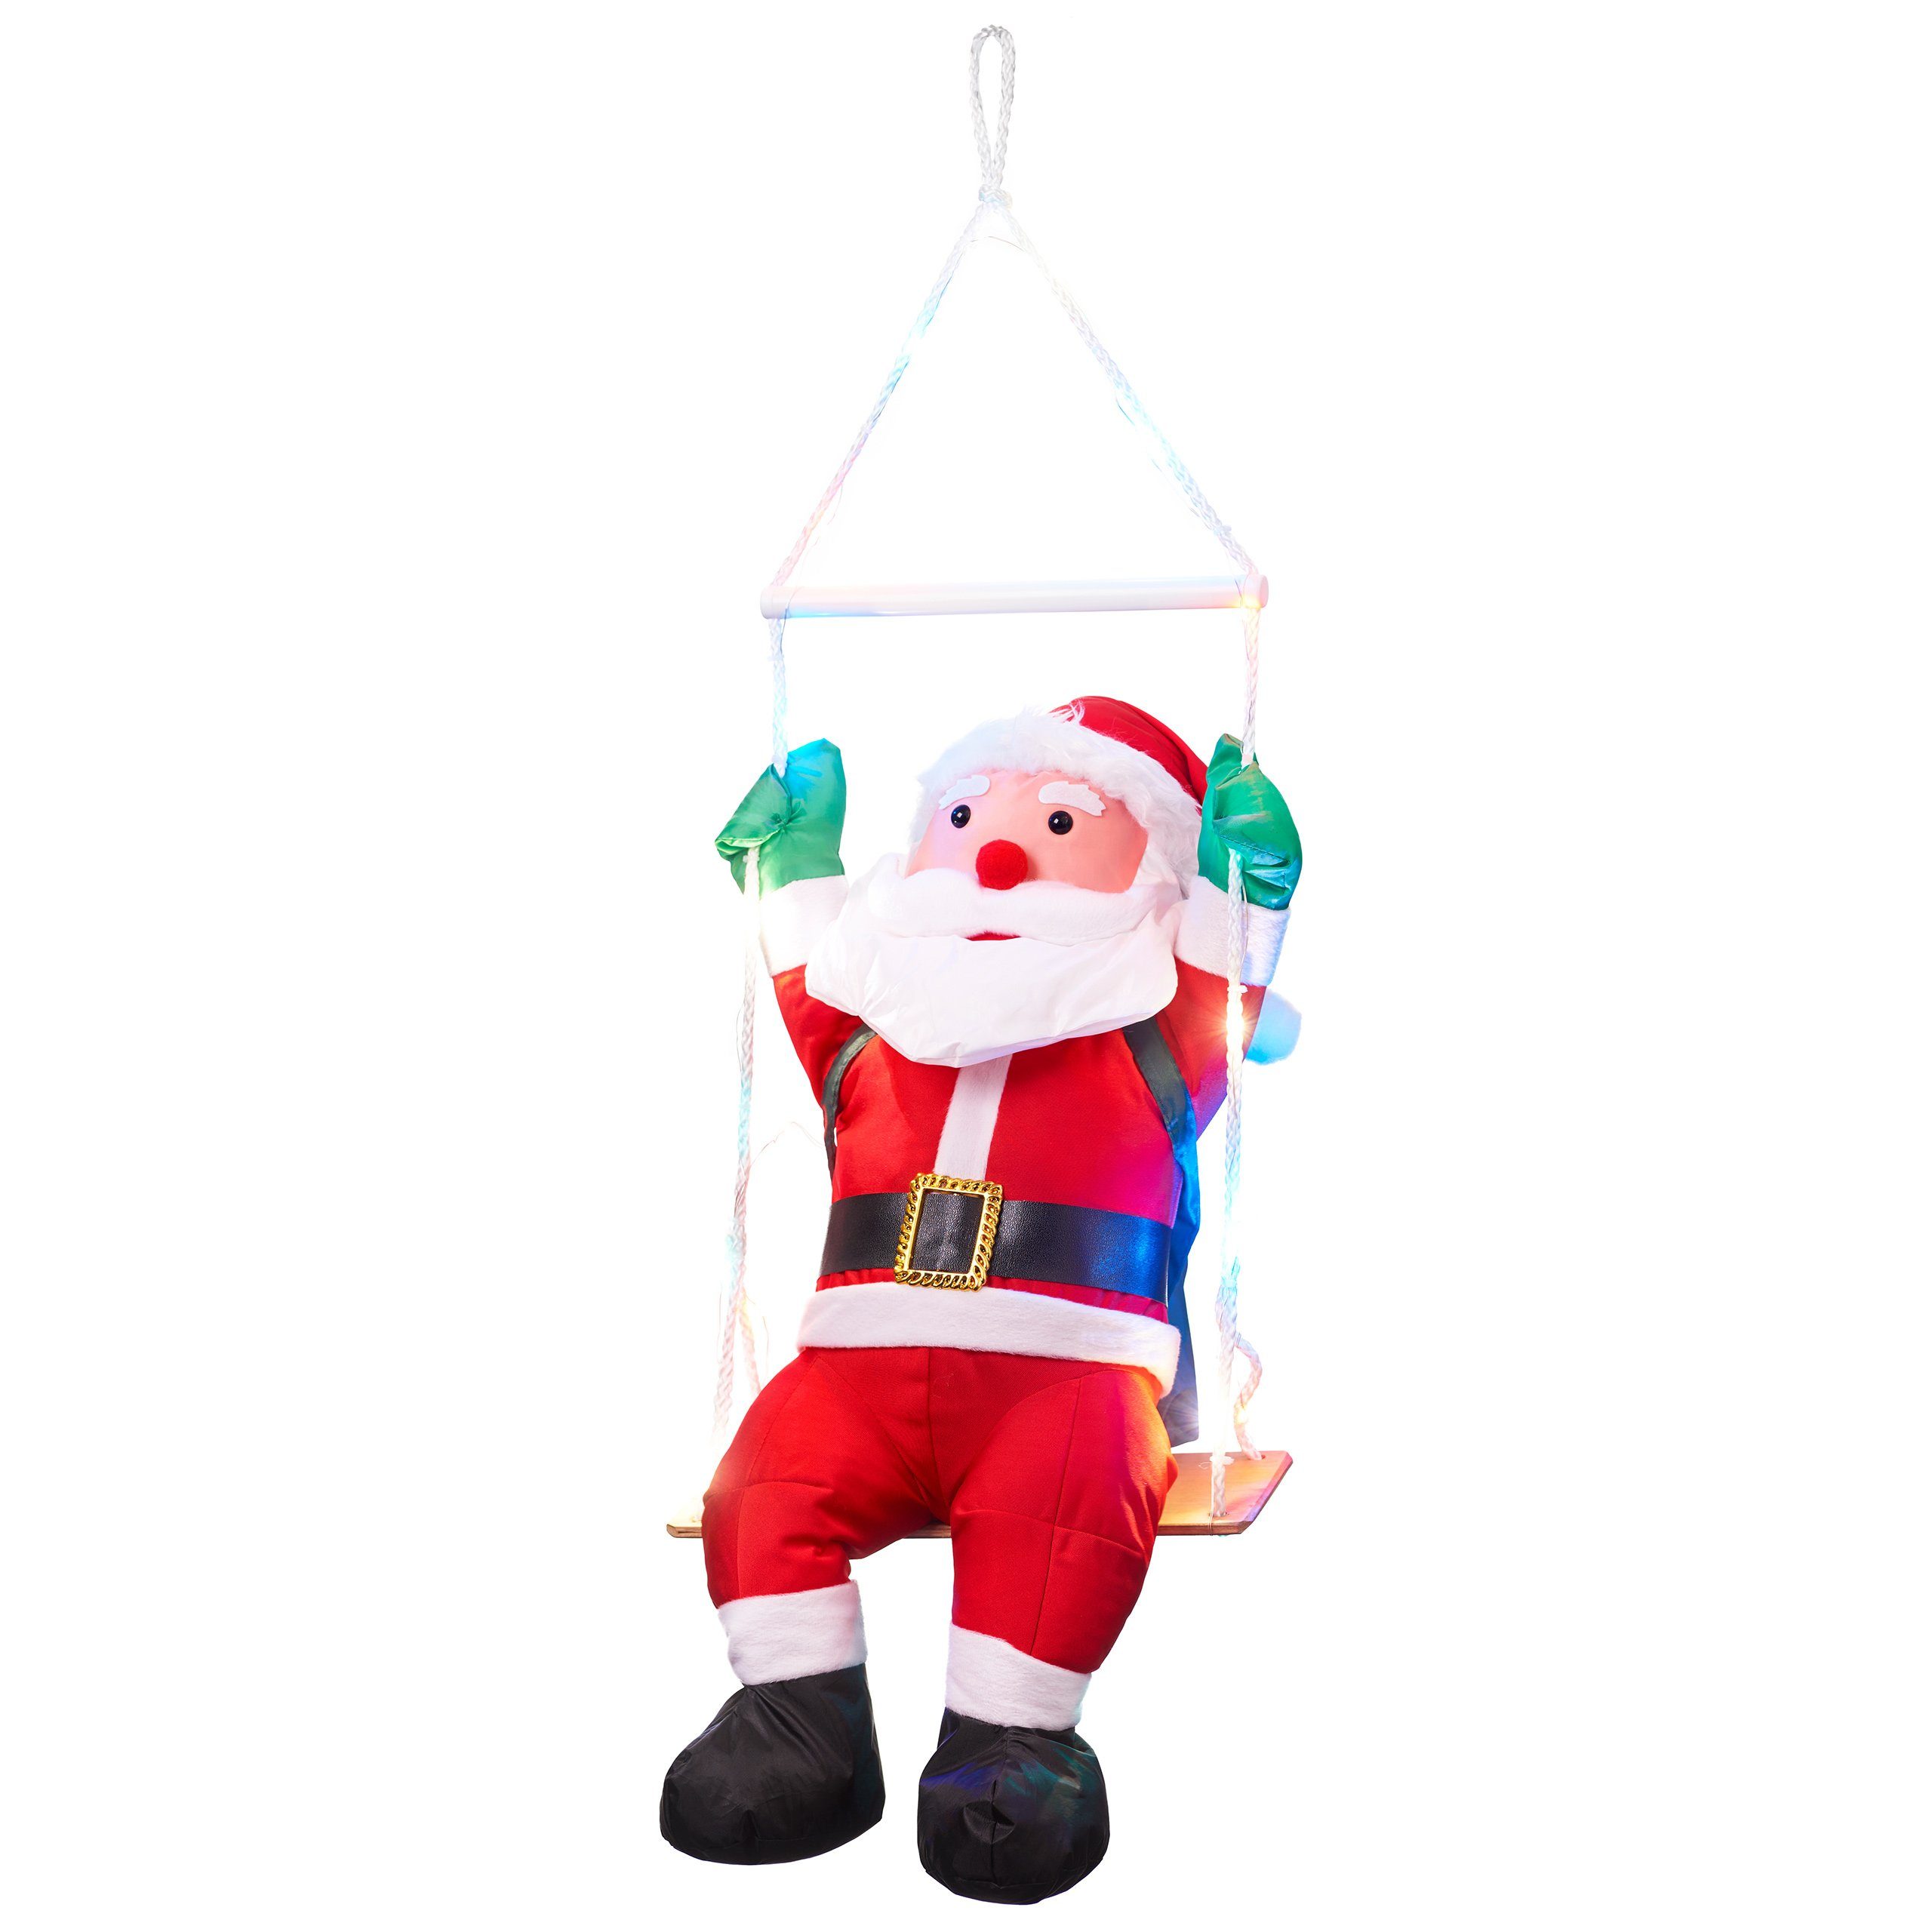 BONETTI Raburg Weihnachtsmann auf Schaukel mit bunten LEDs, weiche XL Deko-Figur für Weihnachten, mit 20 bunten LEDs, 6 h Timer, ca. 60 cm groß, Gesamthöhe: ca. 90 cm